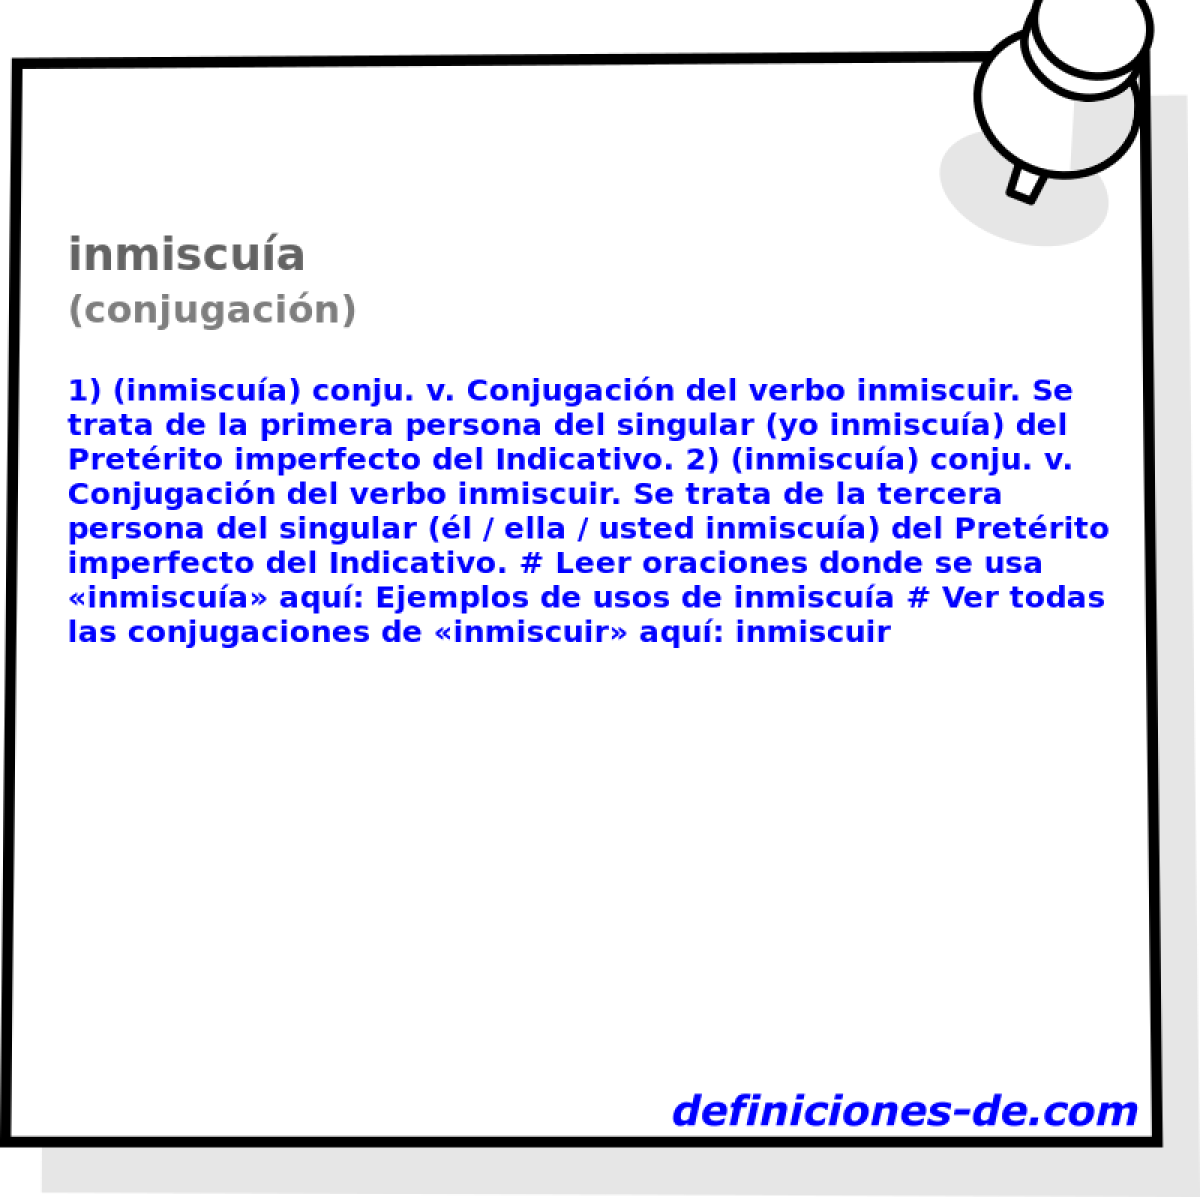 inmiscua (conjugacin)